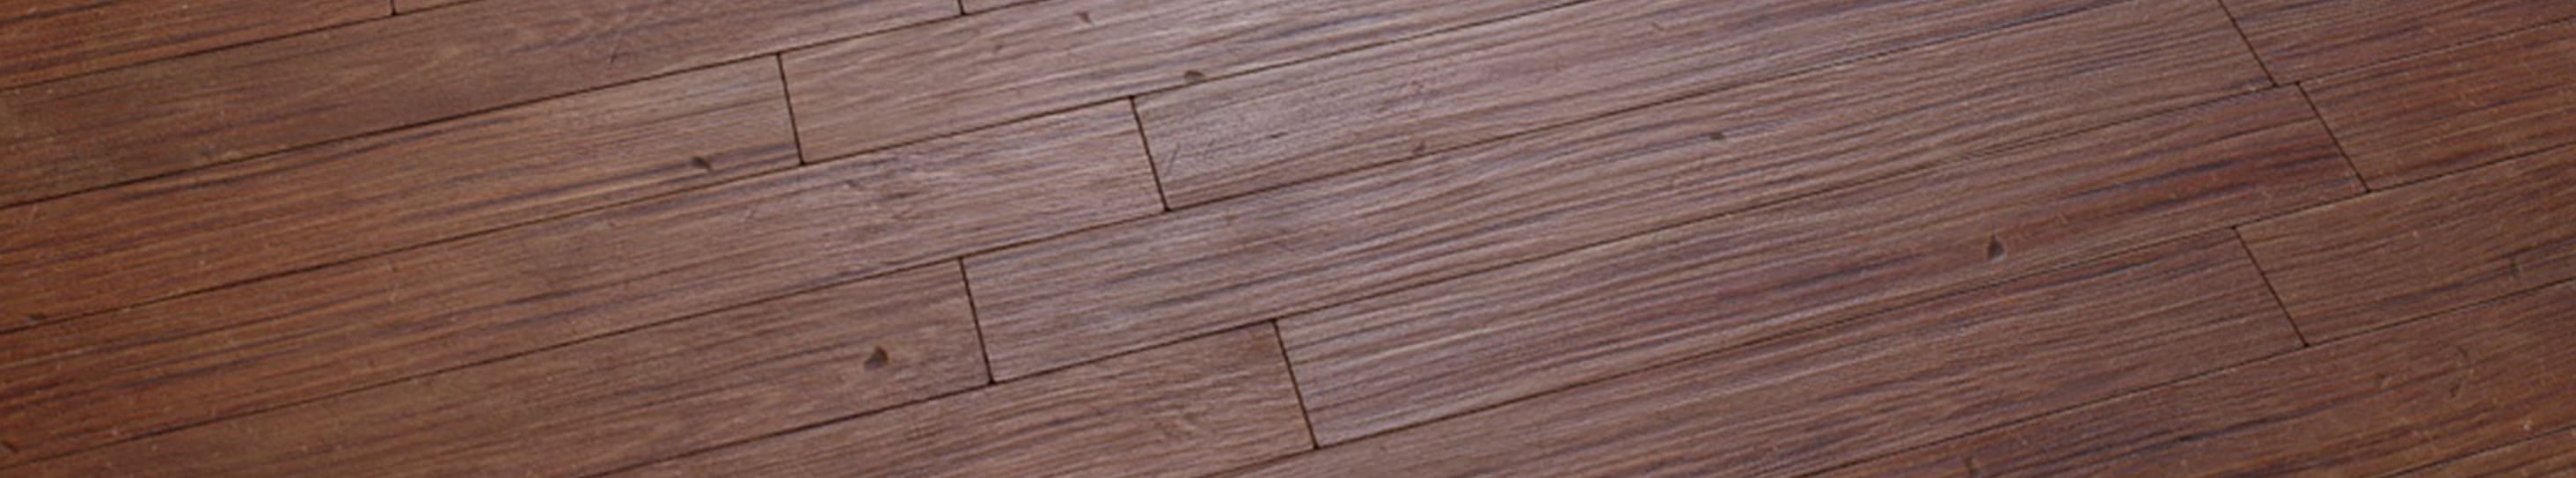 1K, 2K, 4K, 8K, 16K Floor Wood Texture